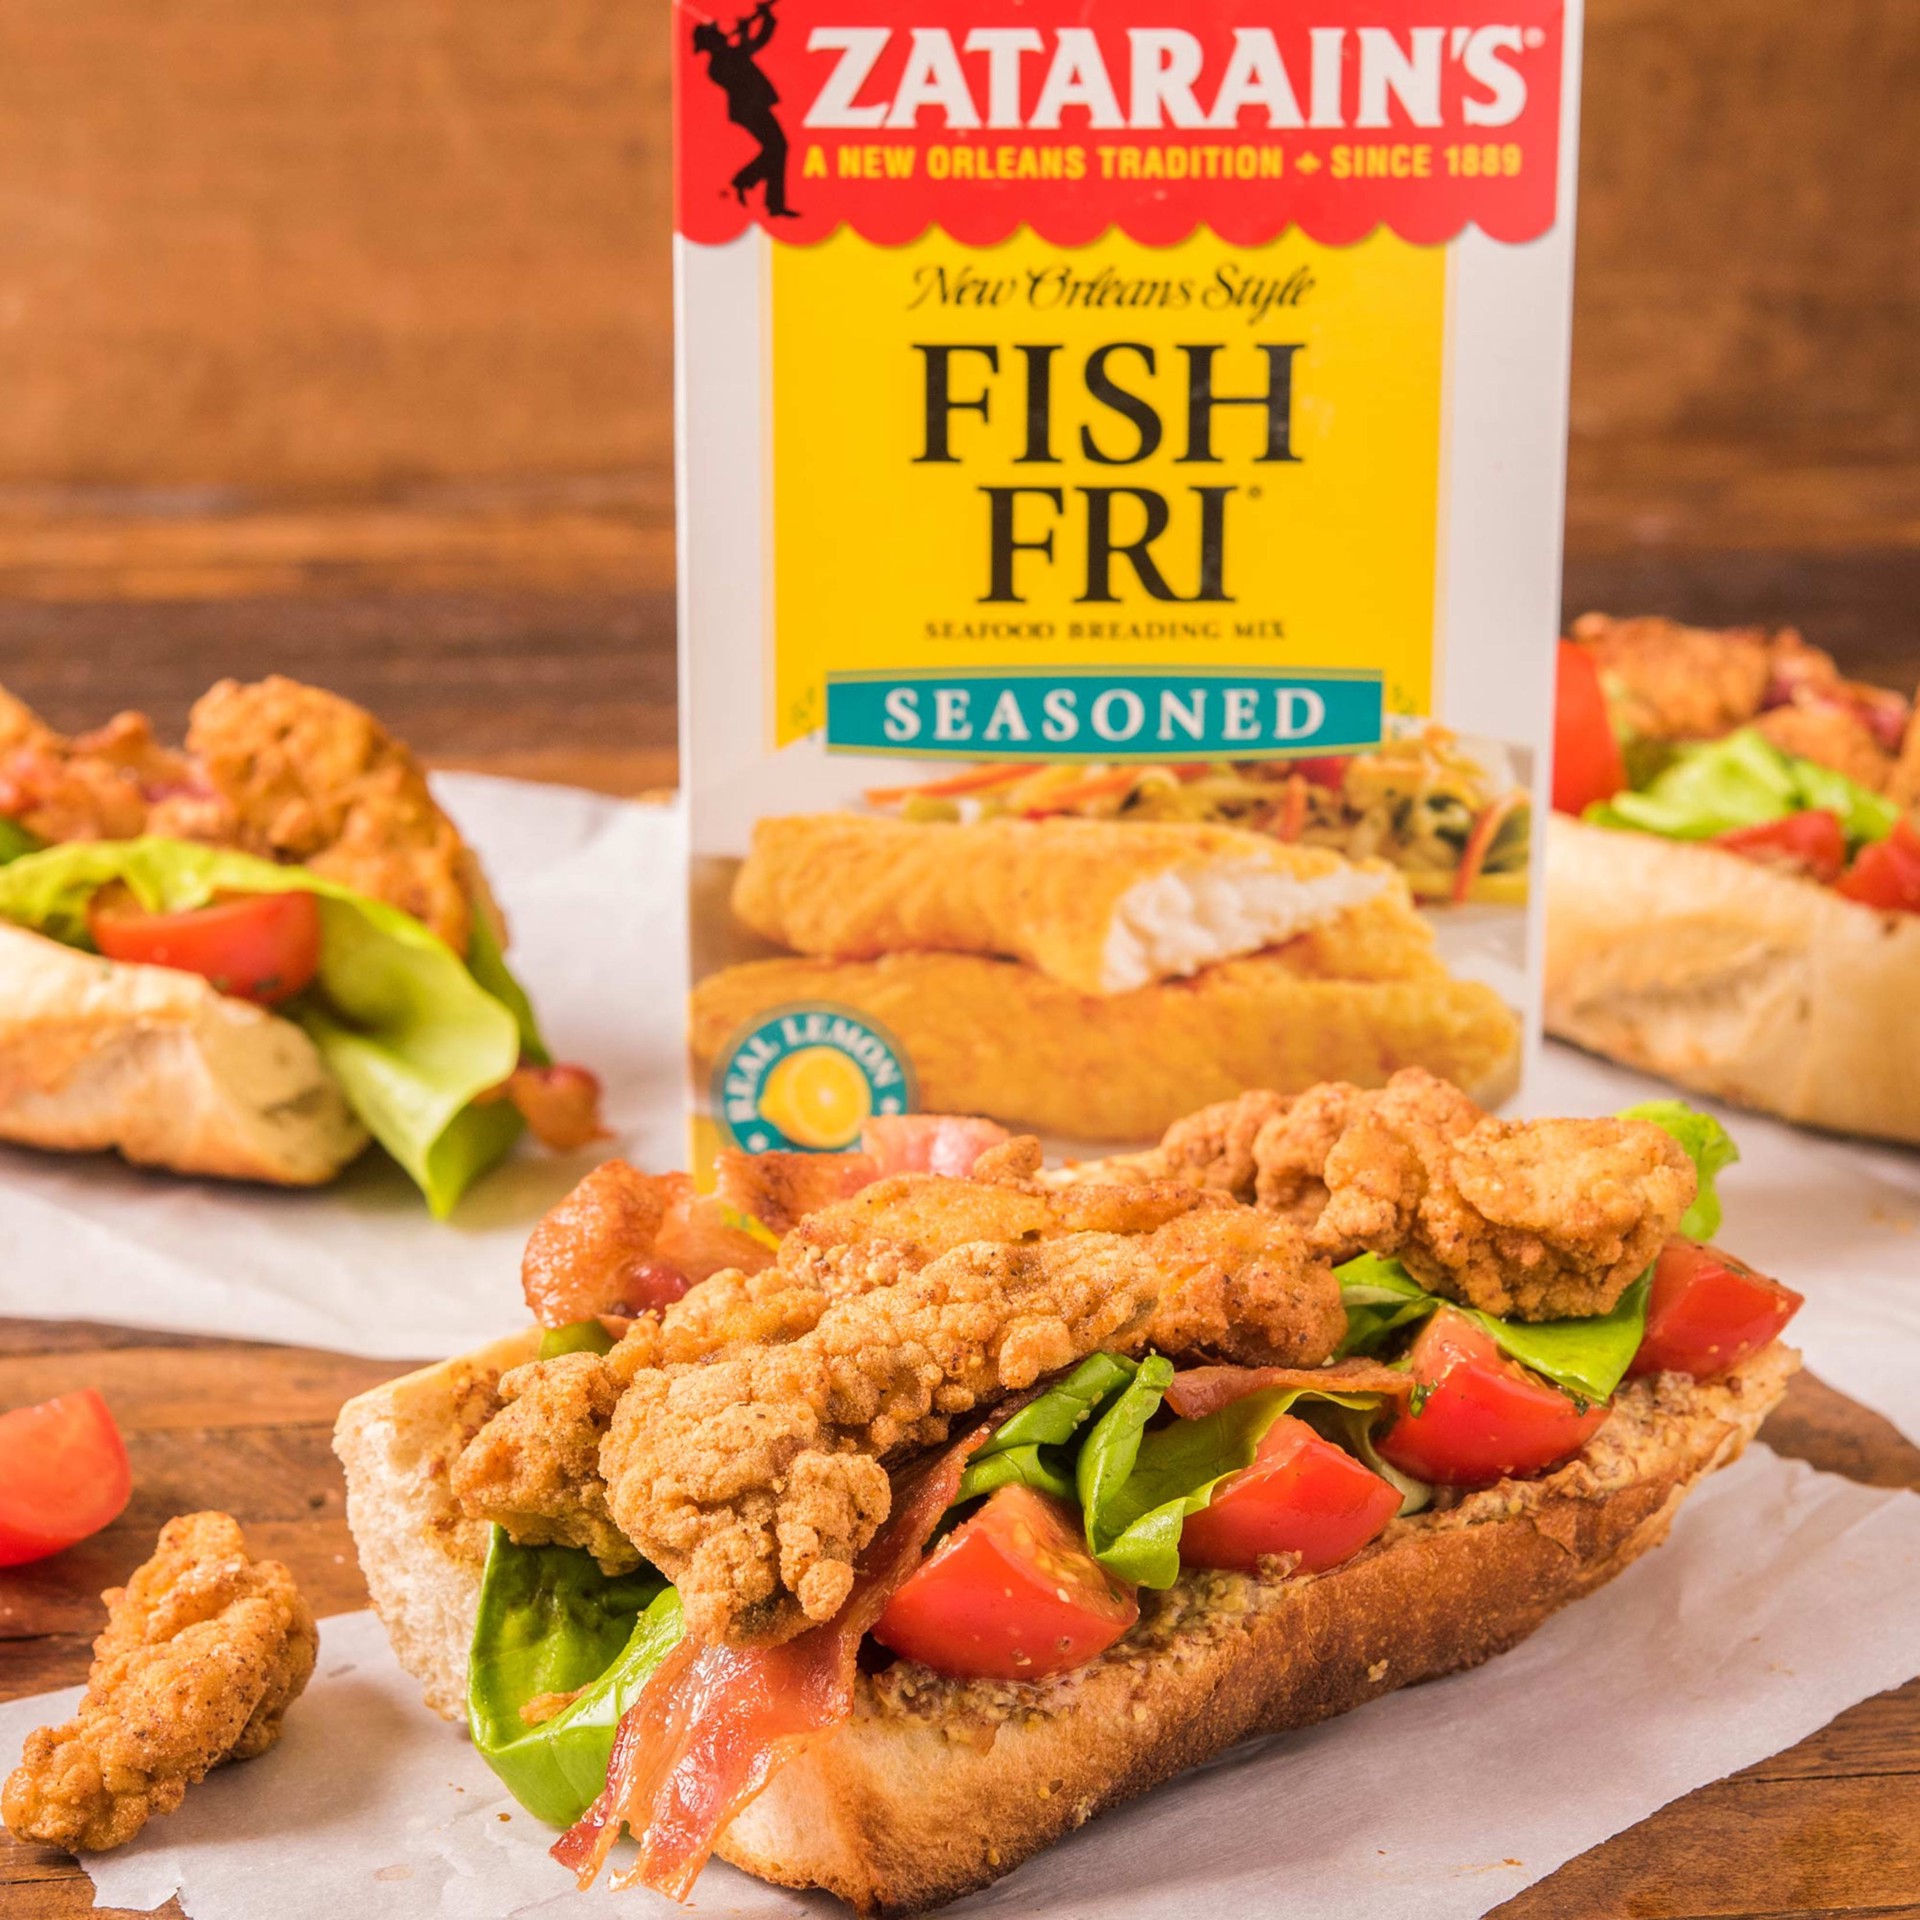 slide 5 of 5, Zatarain's Fish Fry - Seasoned, 24 oz